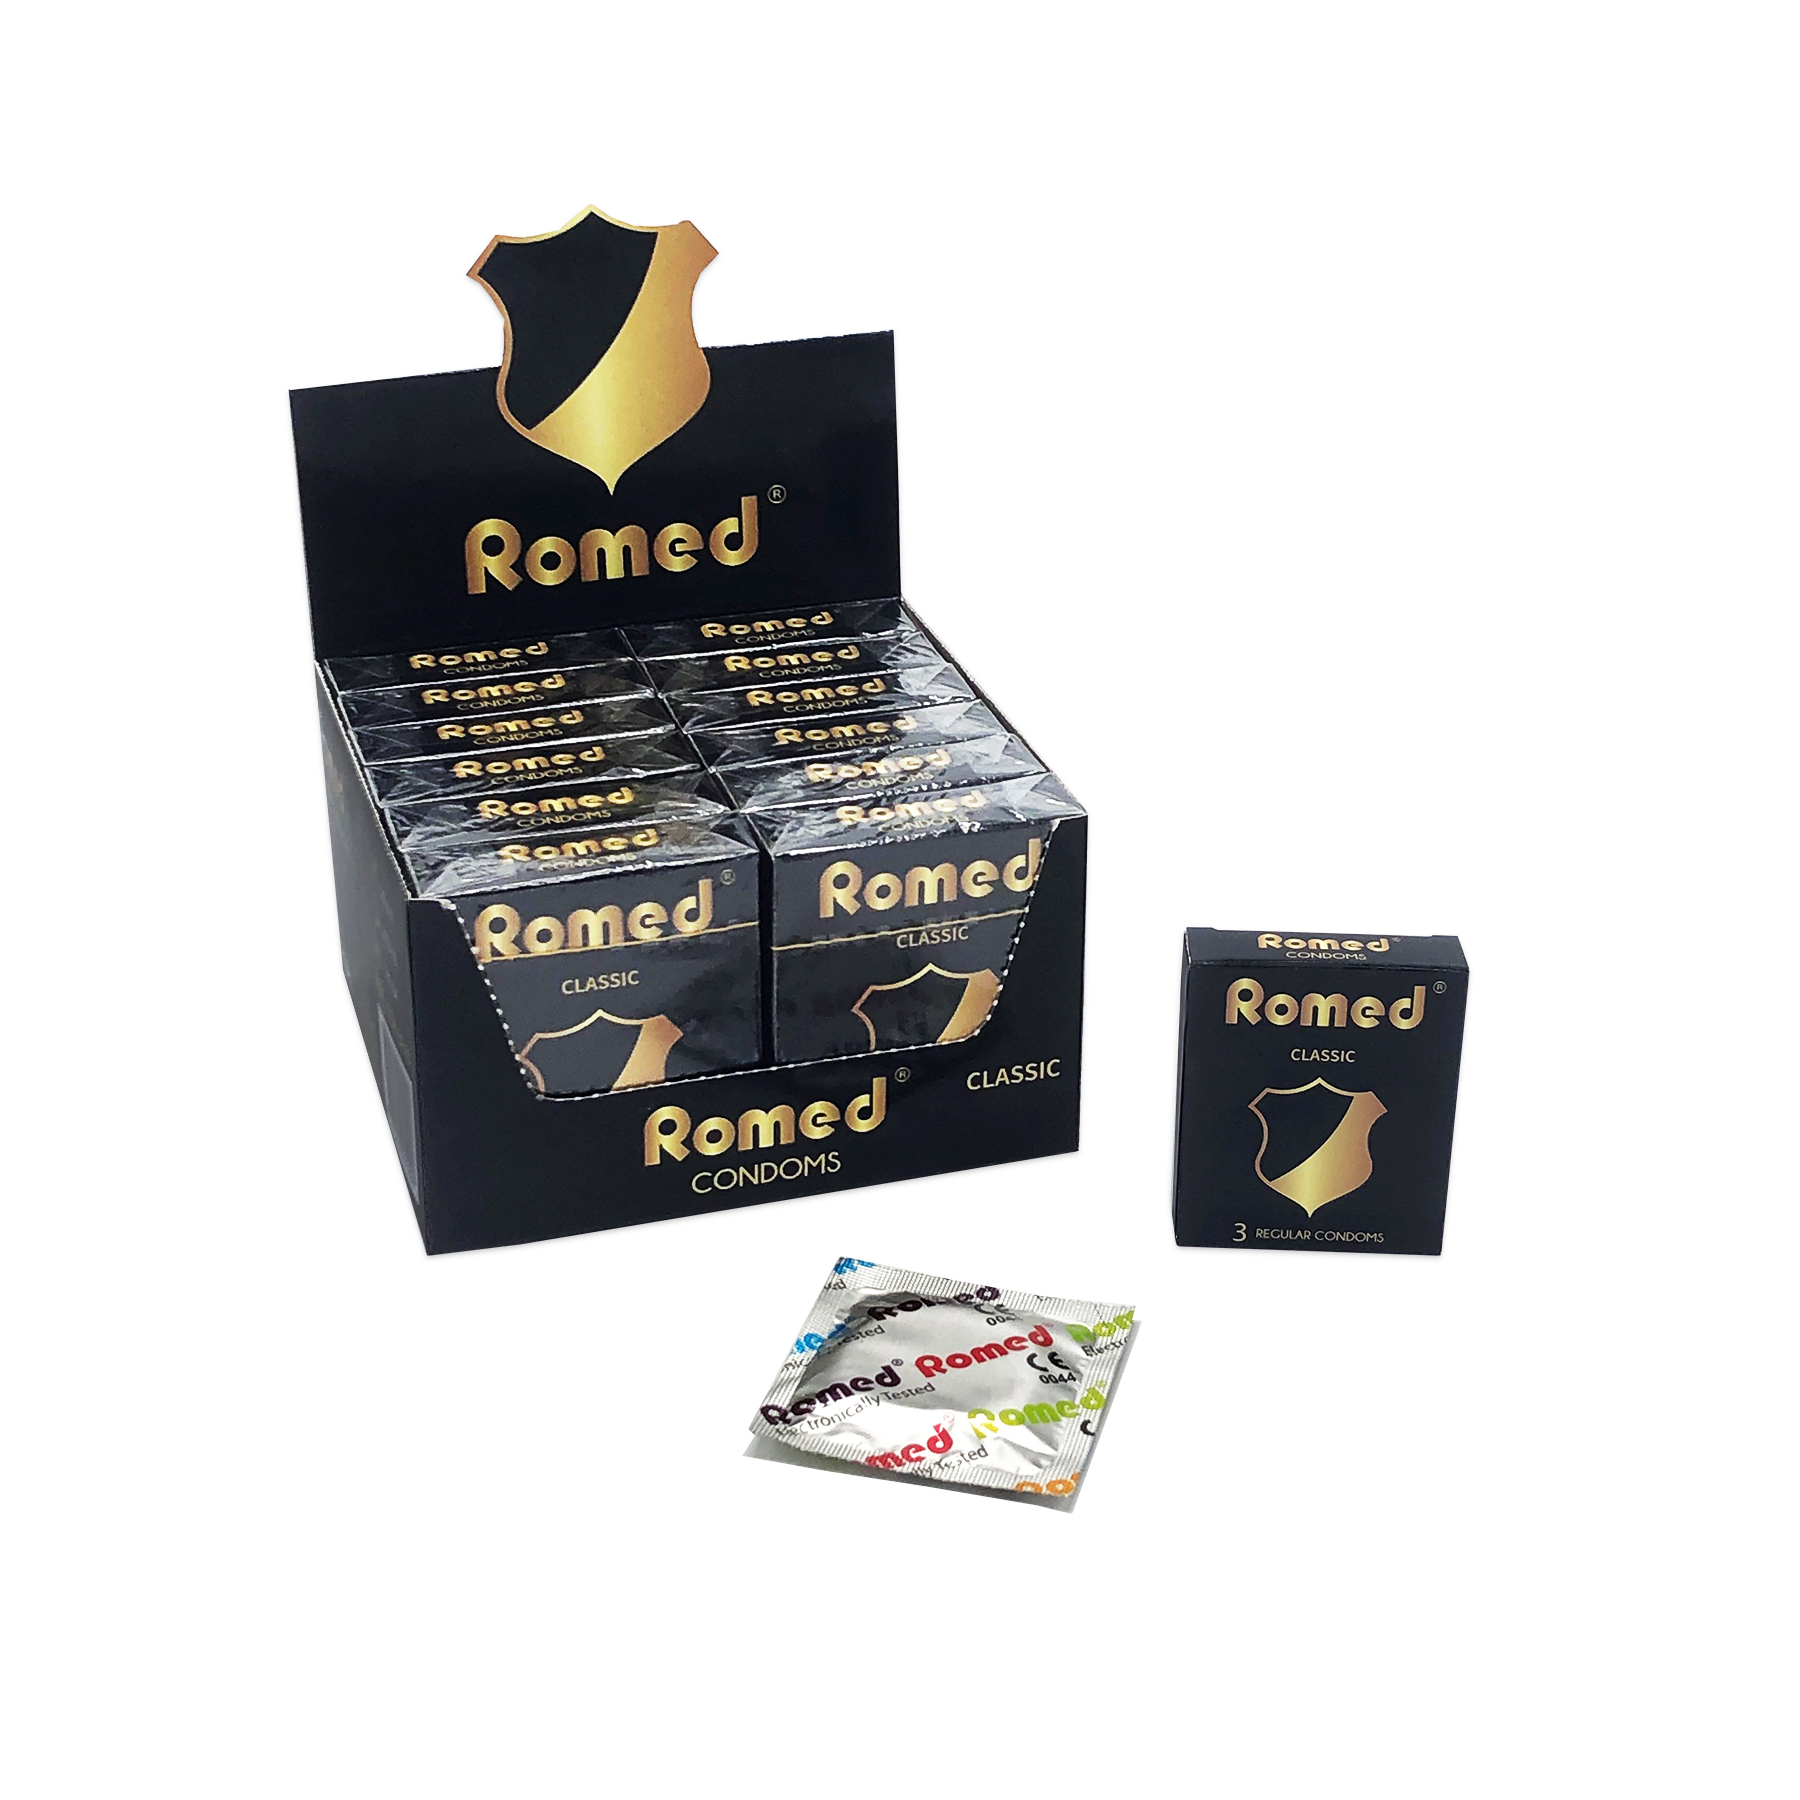 CON3P40 Préservatifs Romed, emballés par pièce dans une feuille (carrée), 3 pièces dans une petite boîte, 12 x 3 pièces = 36 pièces dans une boîte prête à être vendue, 4 x 36 pièces = 144 pièces dans une boîte intérieure (= 1 lot), 30 x 144 pièces = 4 320 pièces dans un carton.